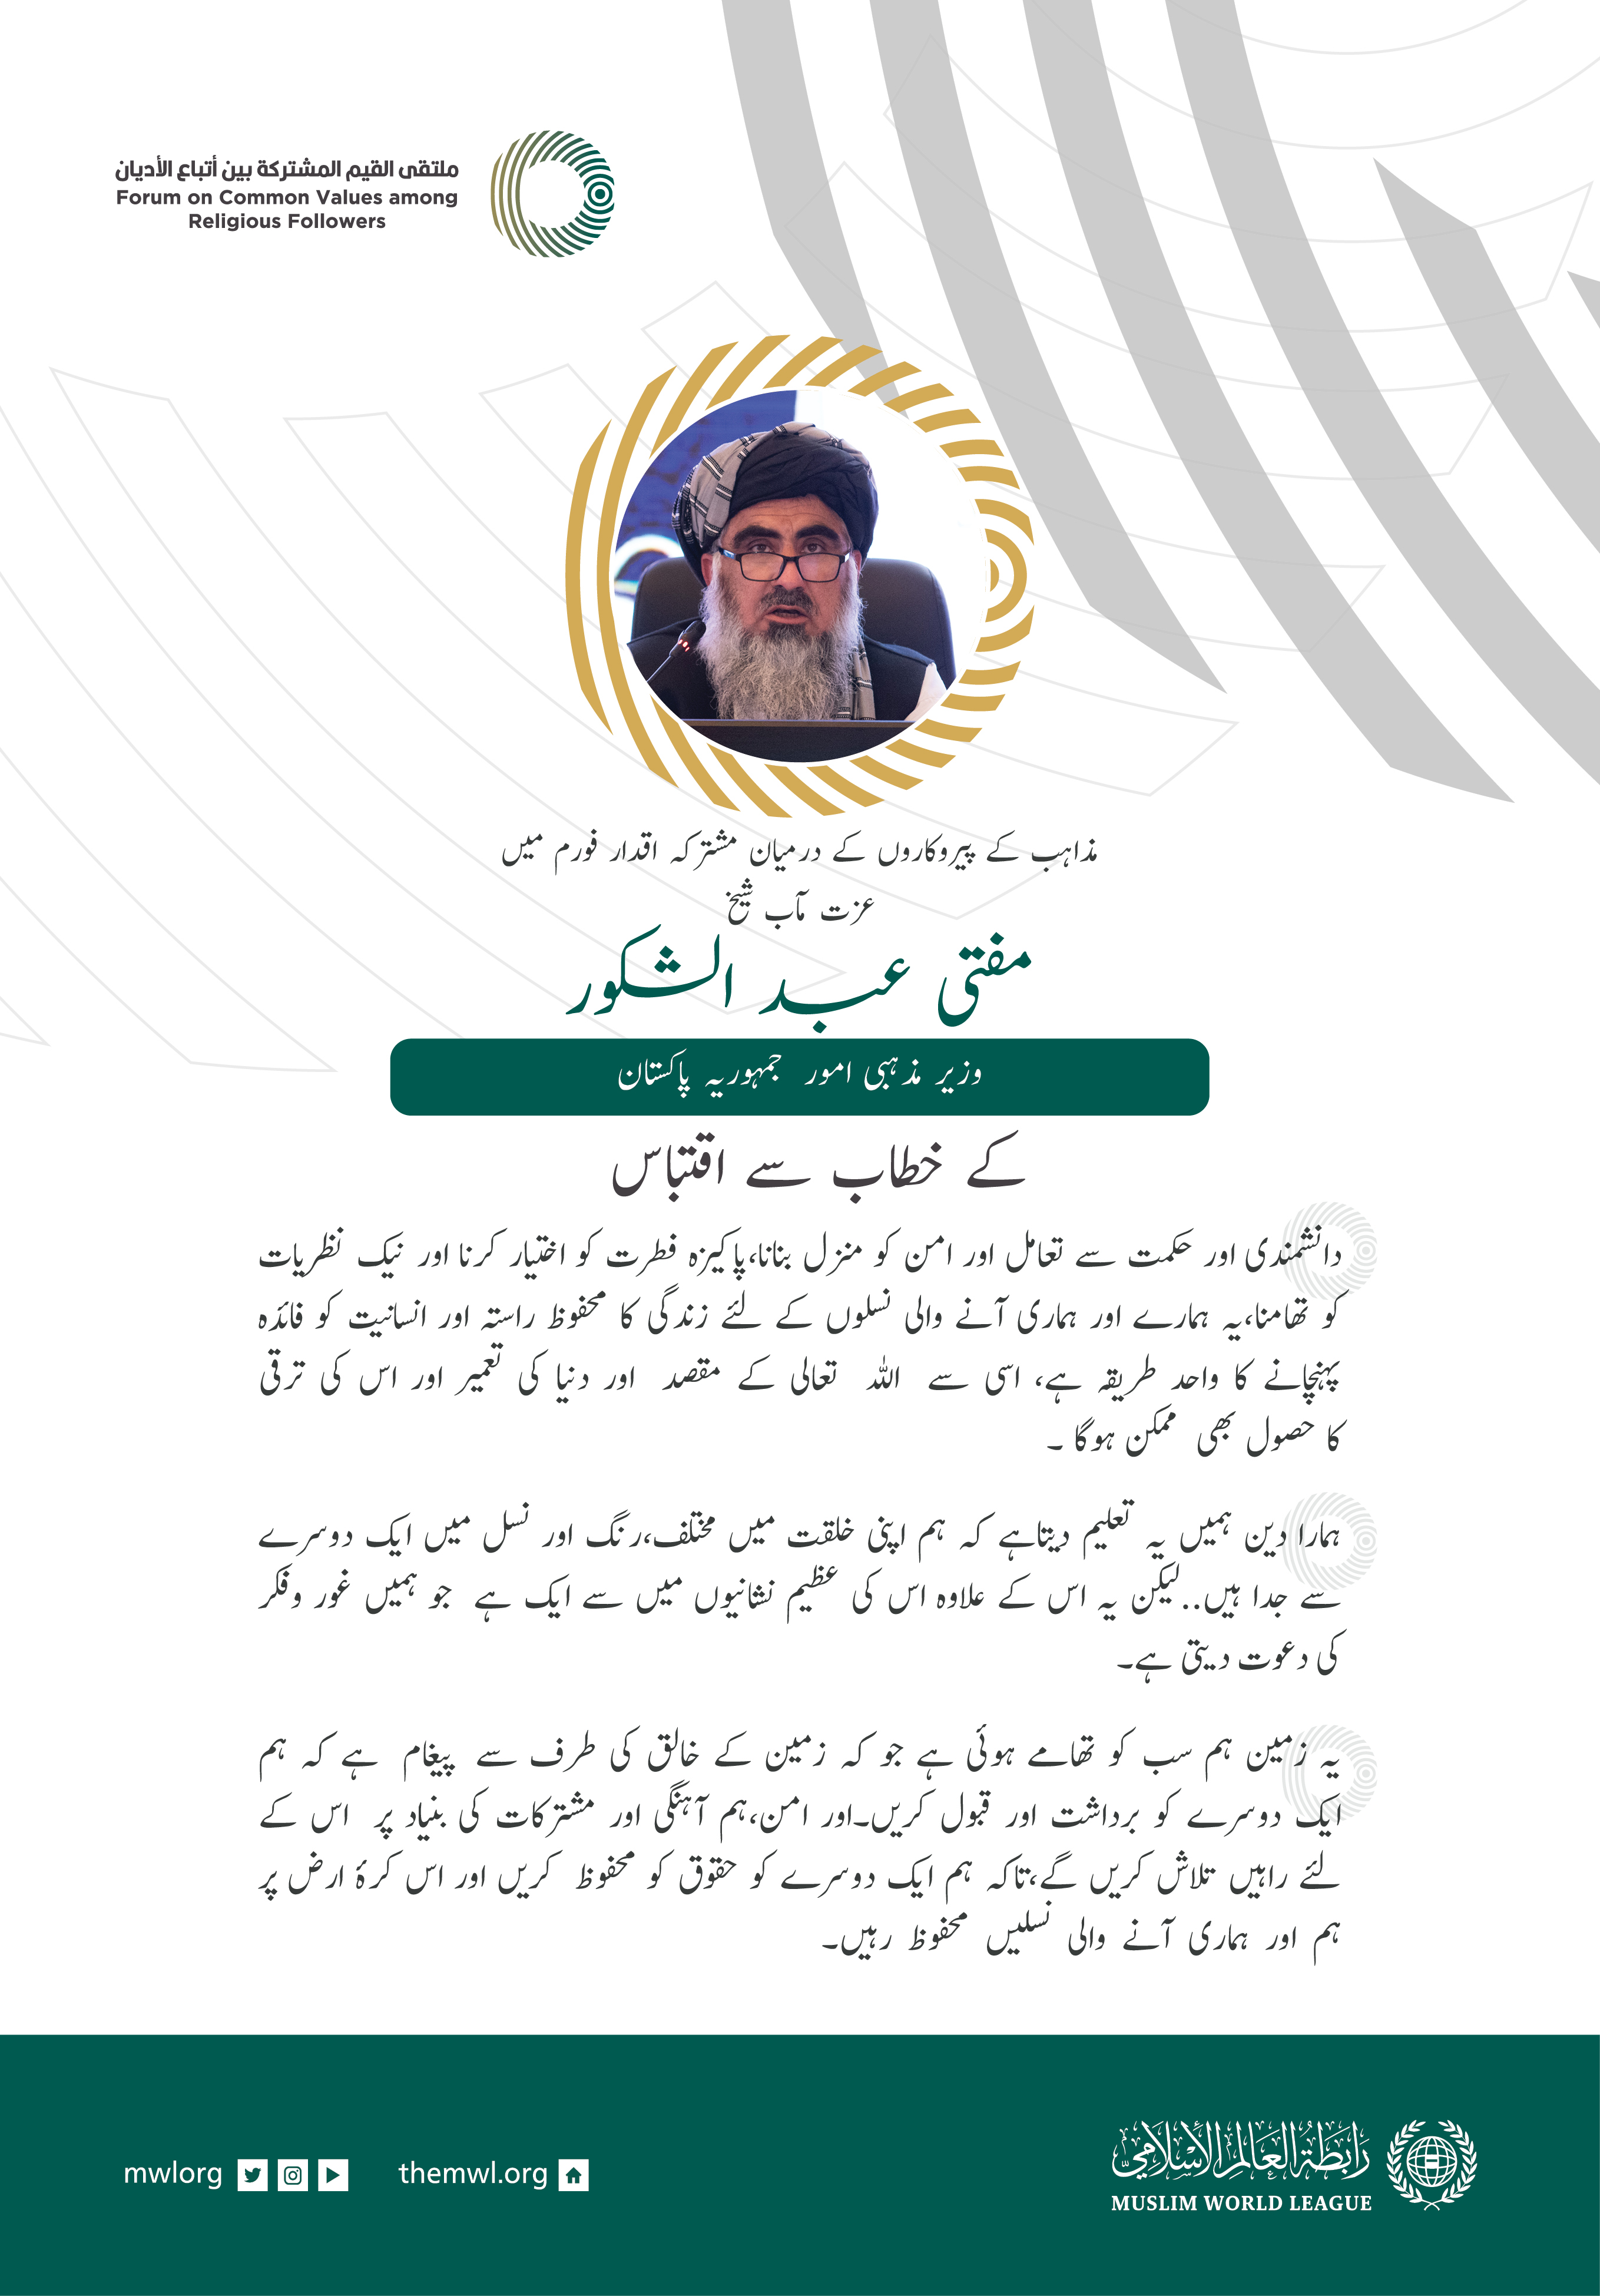 عزت مآب مفتی ڈاکٹر عبد الشکور، وزیر مذہبی امور، پاکستان کے مشترکہ اقدار فورم ریاض میں خطاب سے اقتباس: